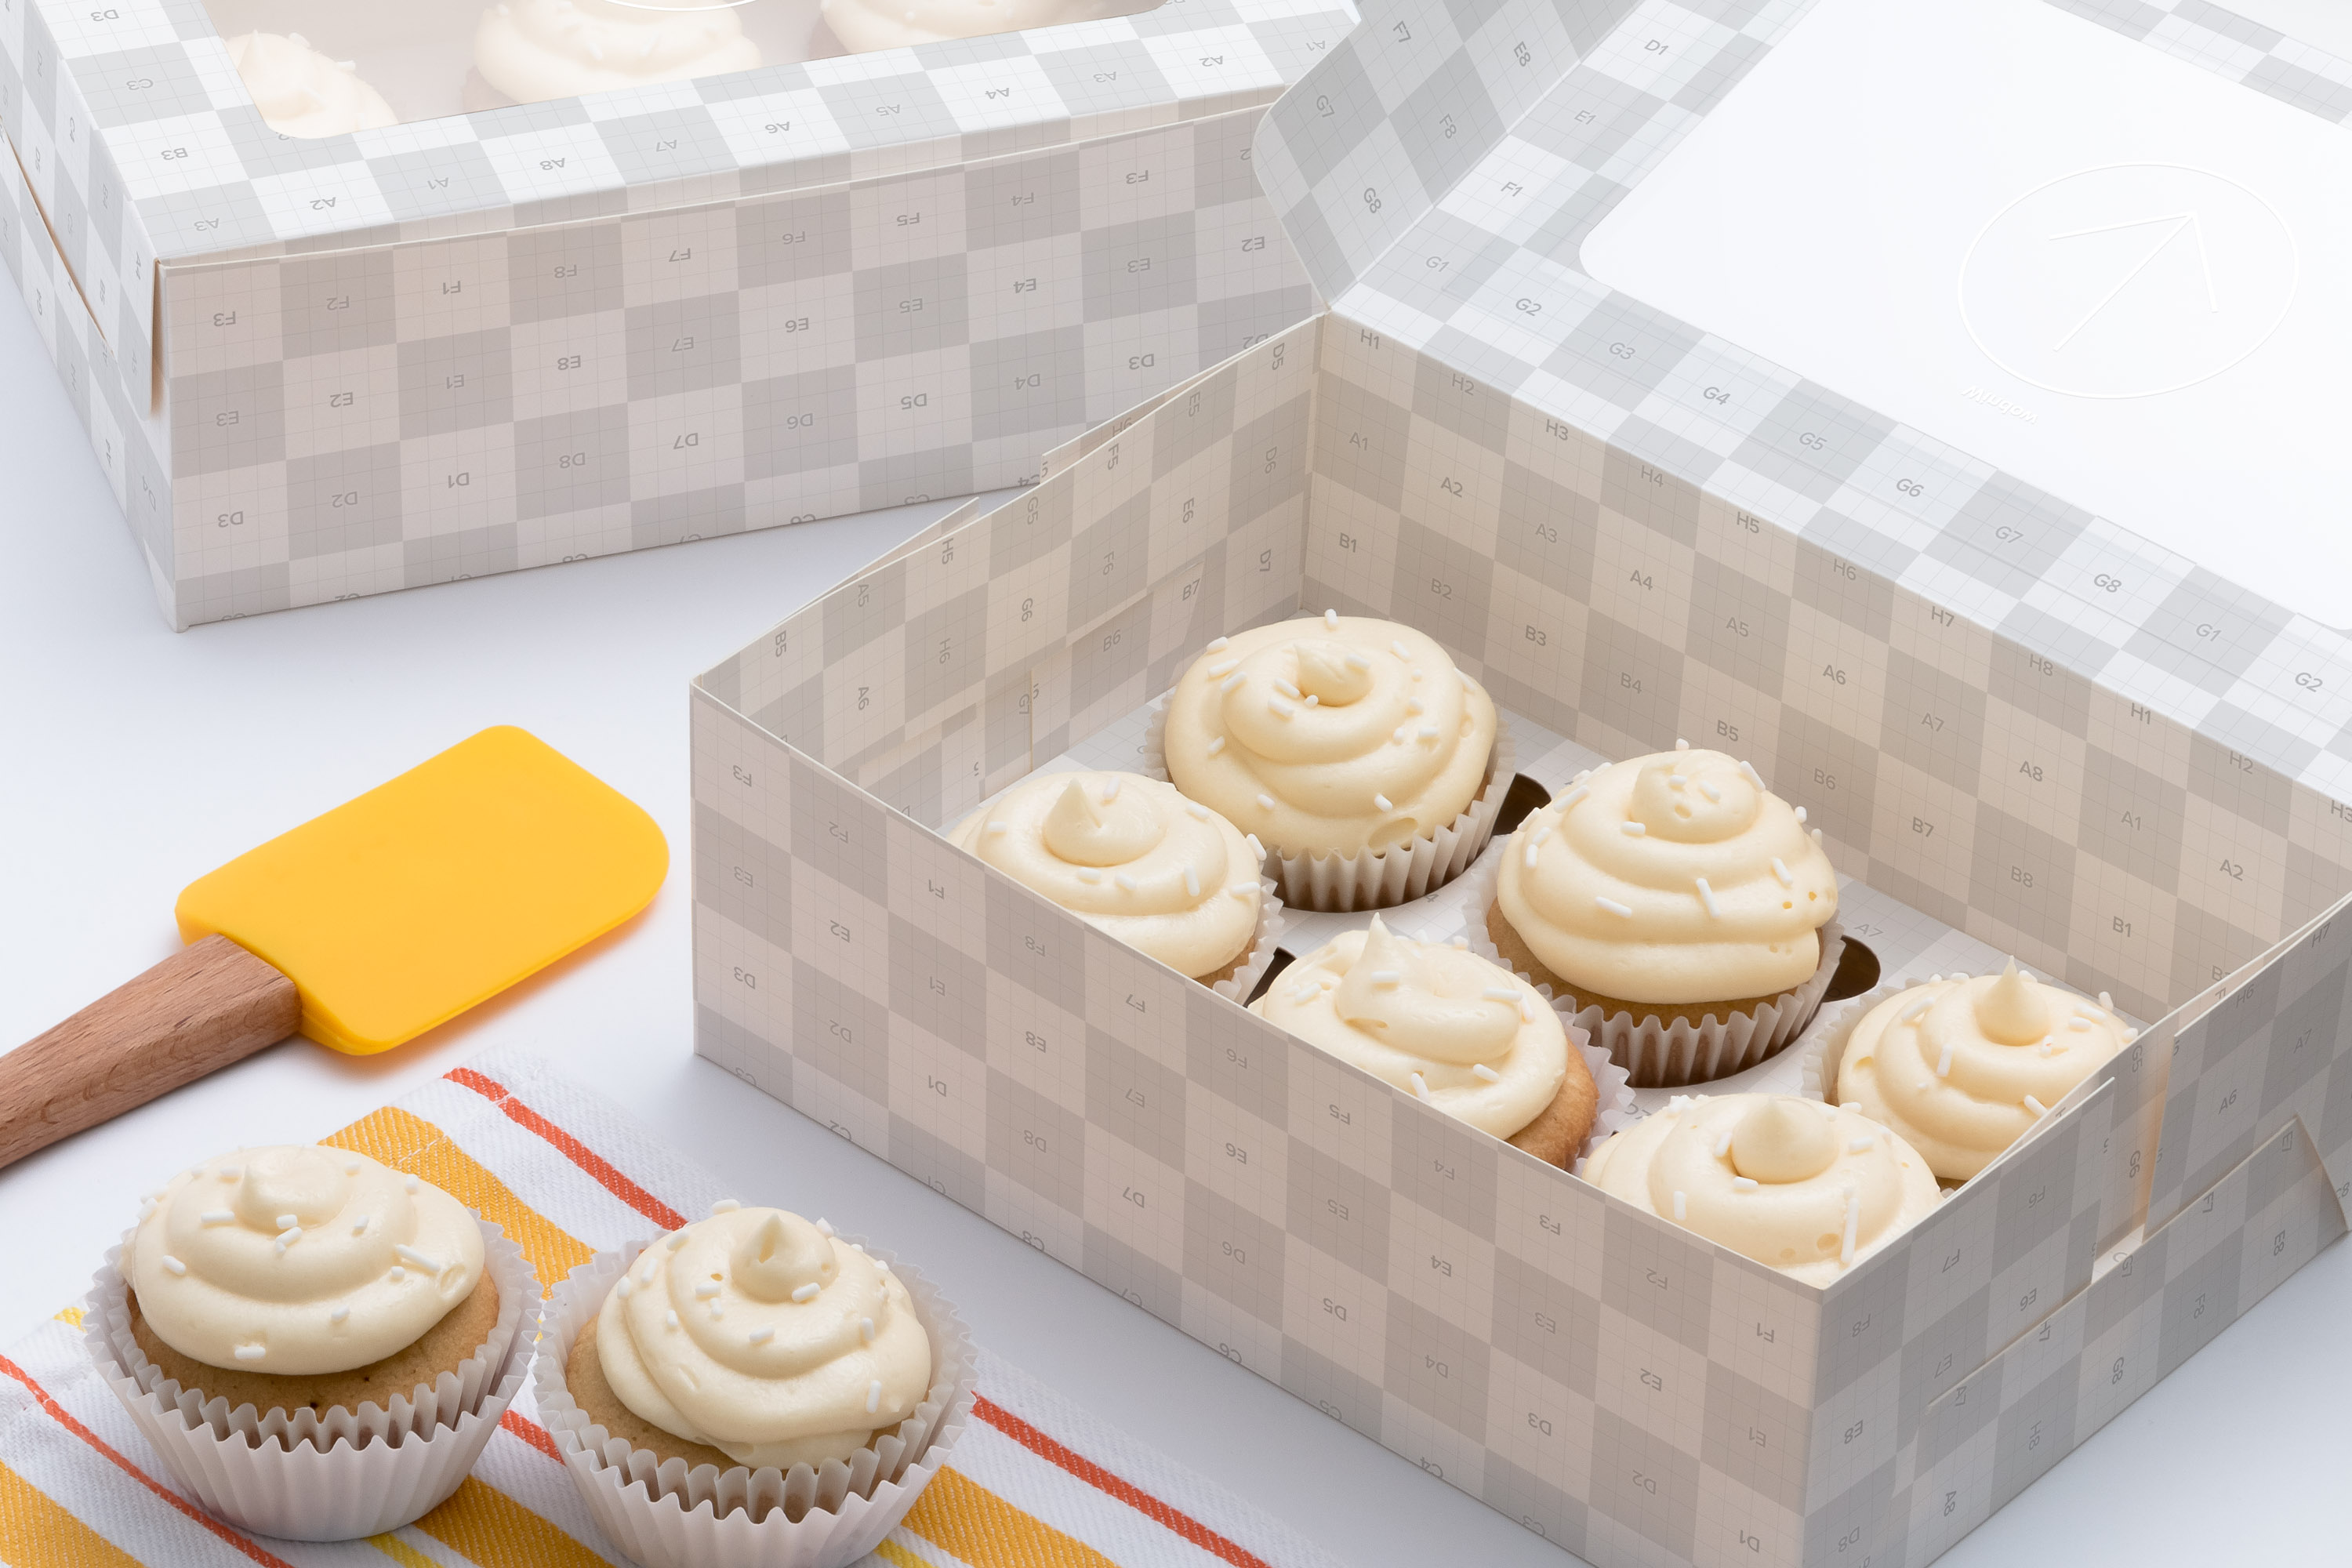 六只装规格纸杯蛋糕包装盒外观设计样机01 Six Cupcake Box Mockup 01插图(2)